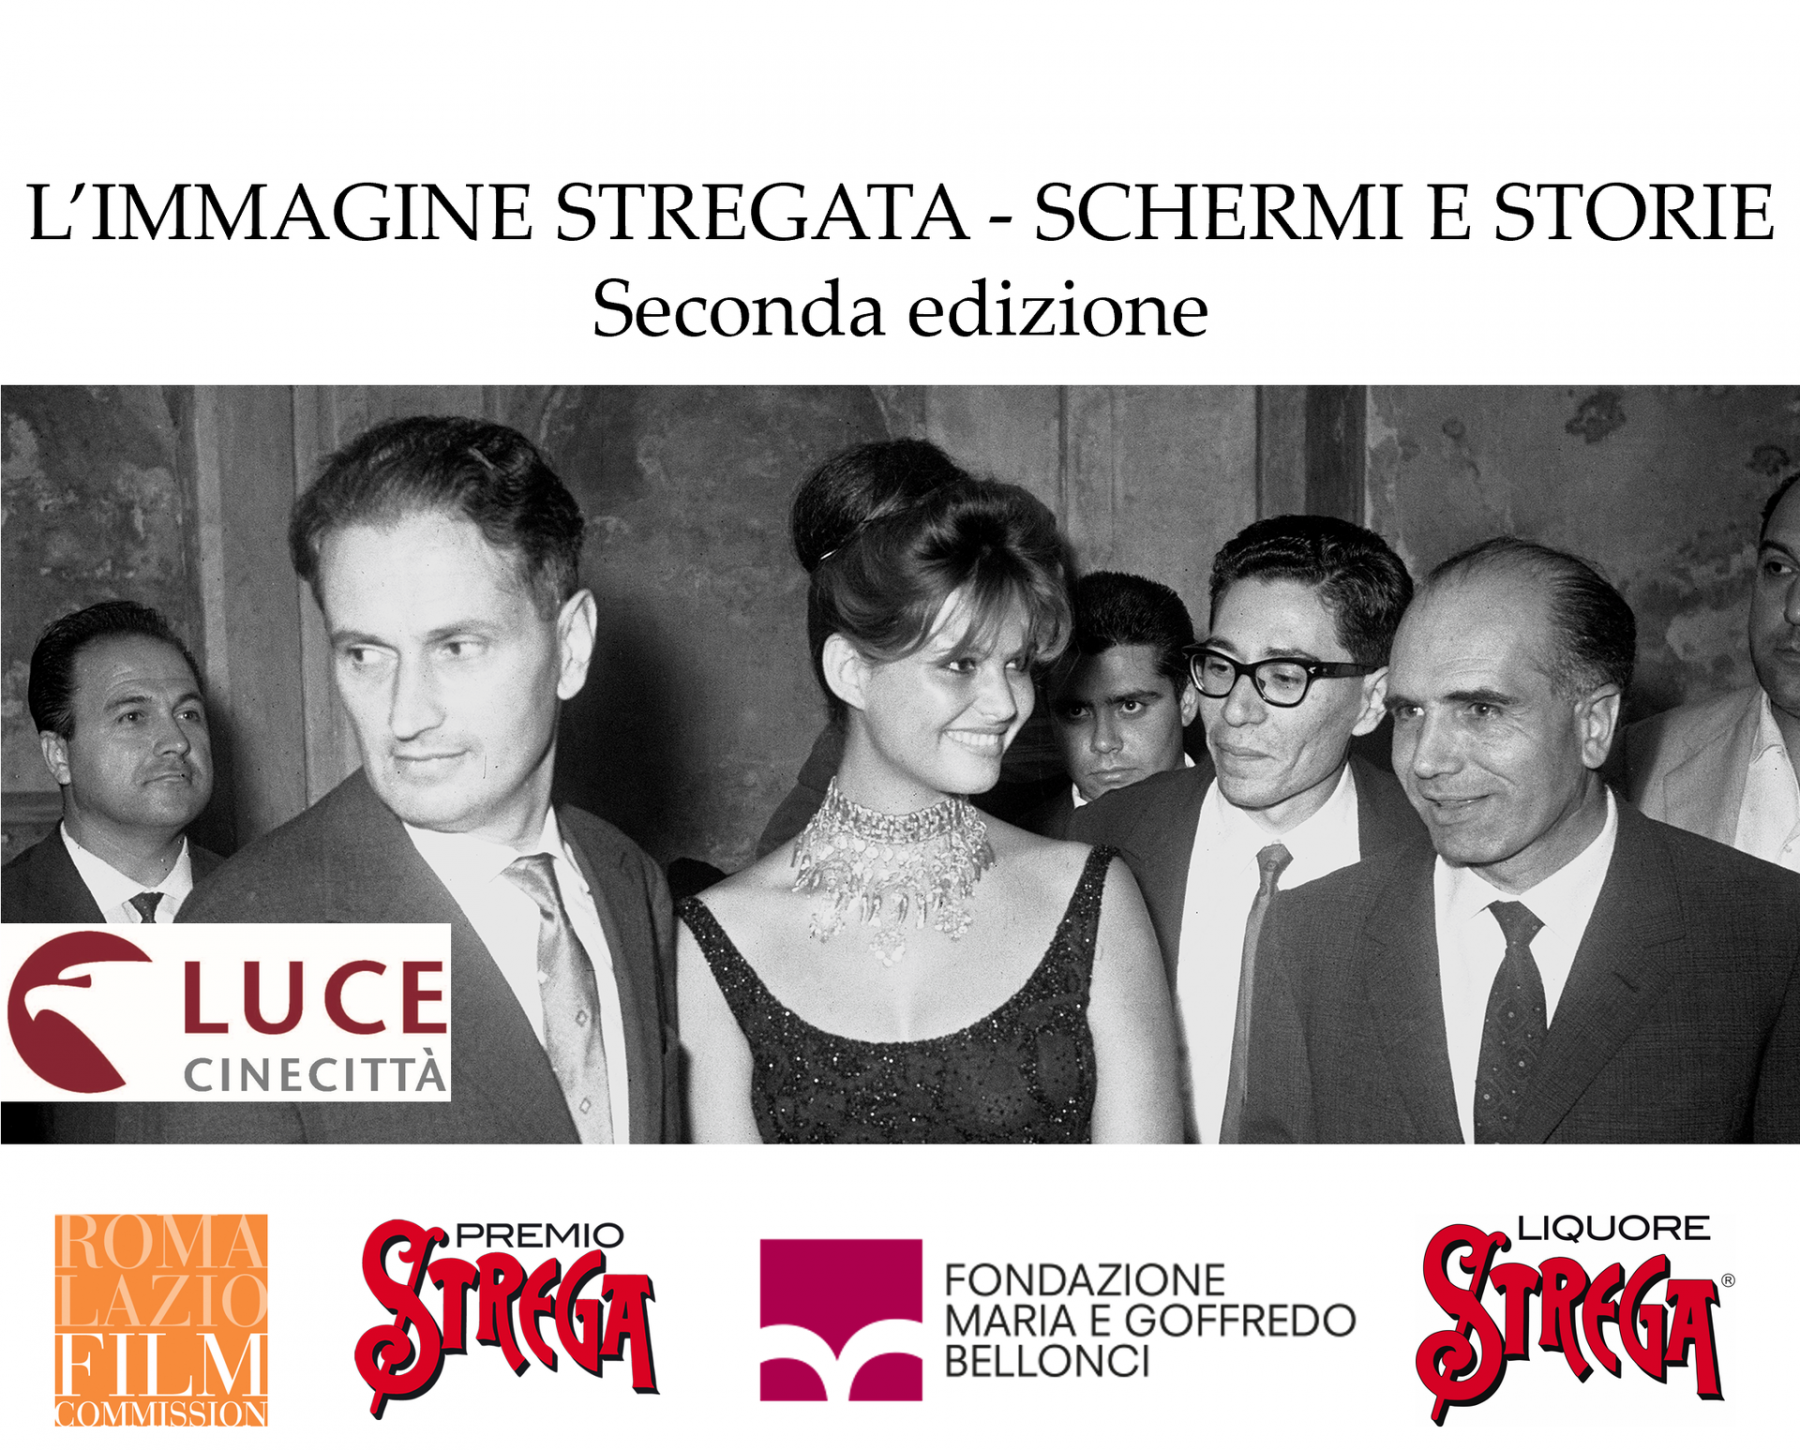 L'immagine stregata, Roma Lazio Film Commission, Premio Strega, Strega spa, Fondazione Bellonci